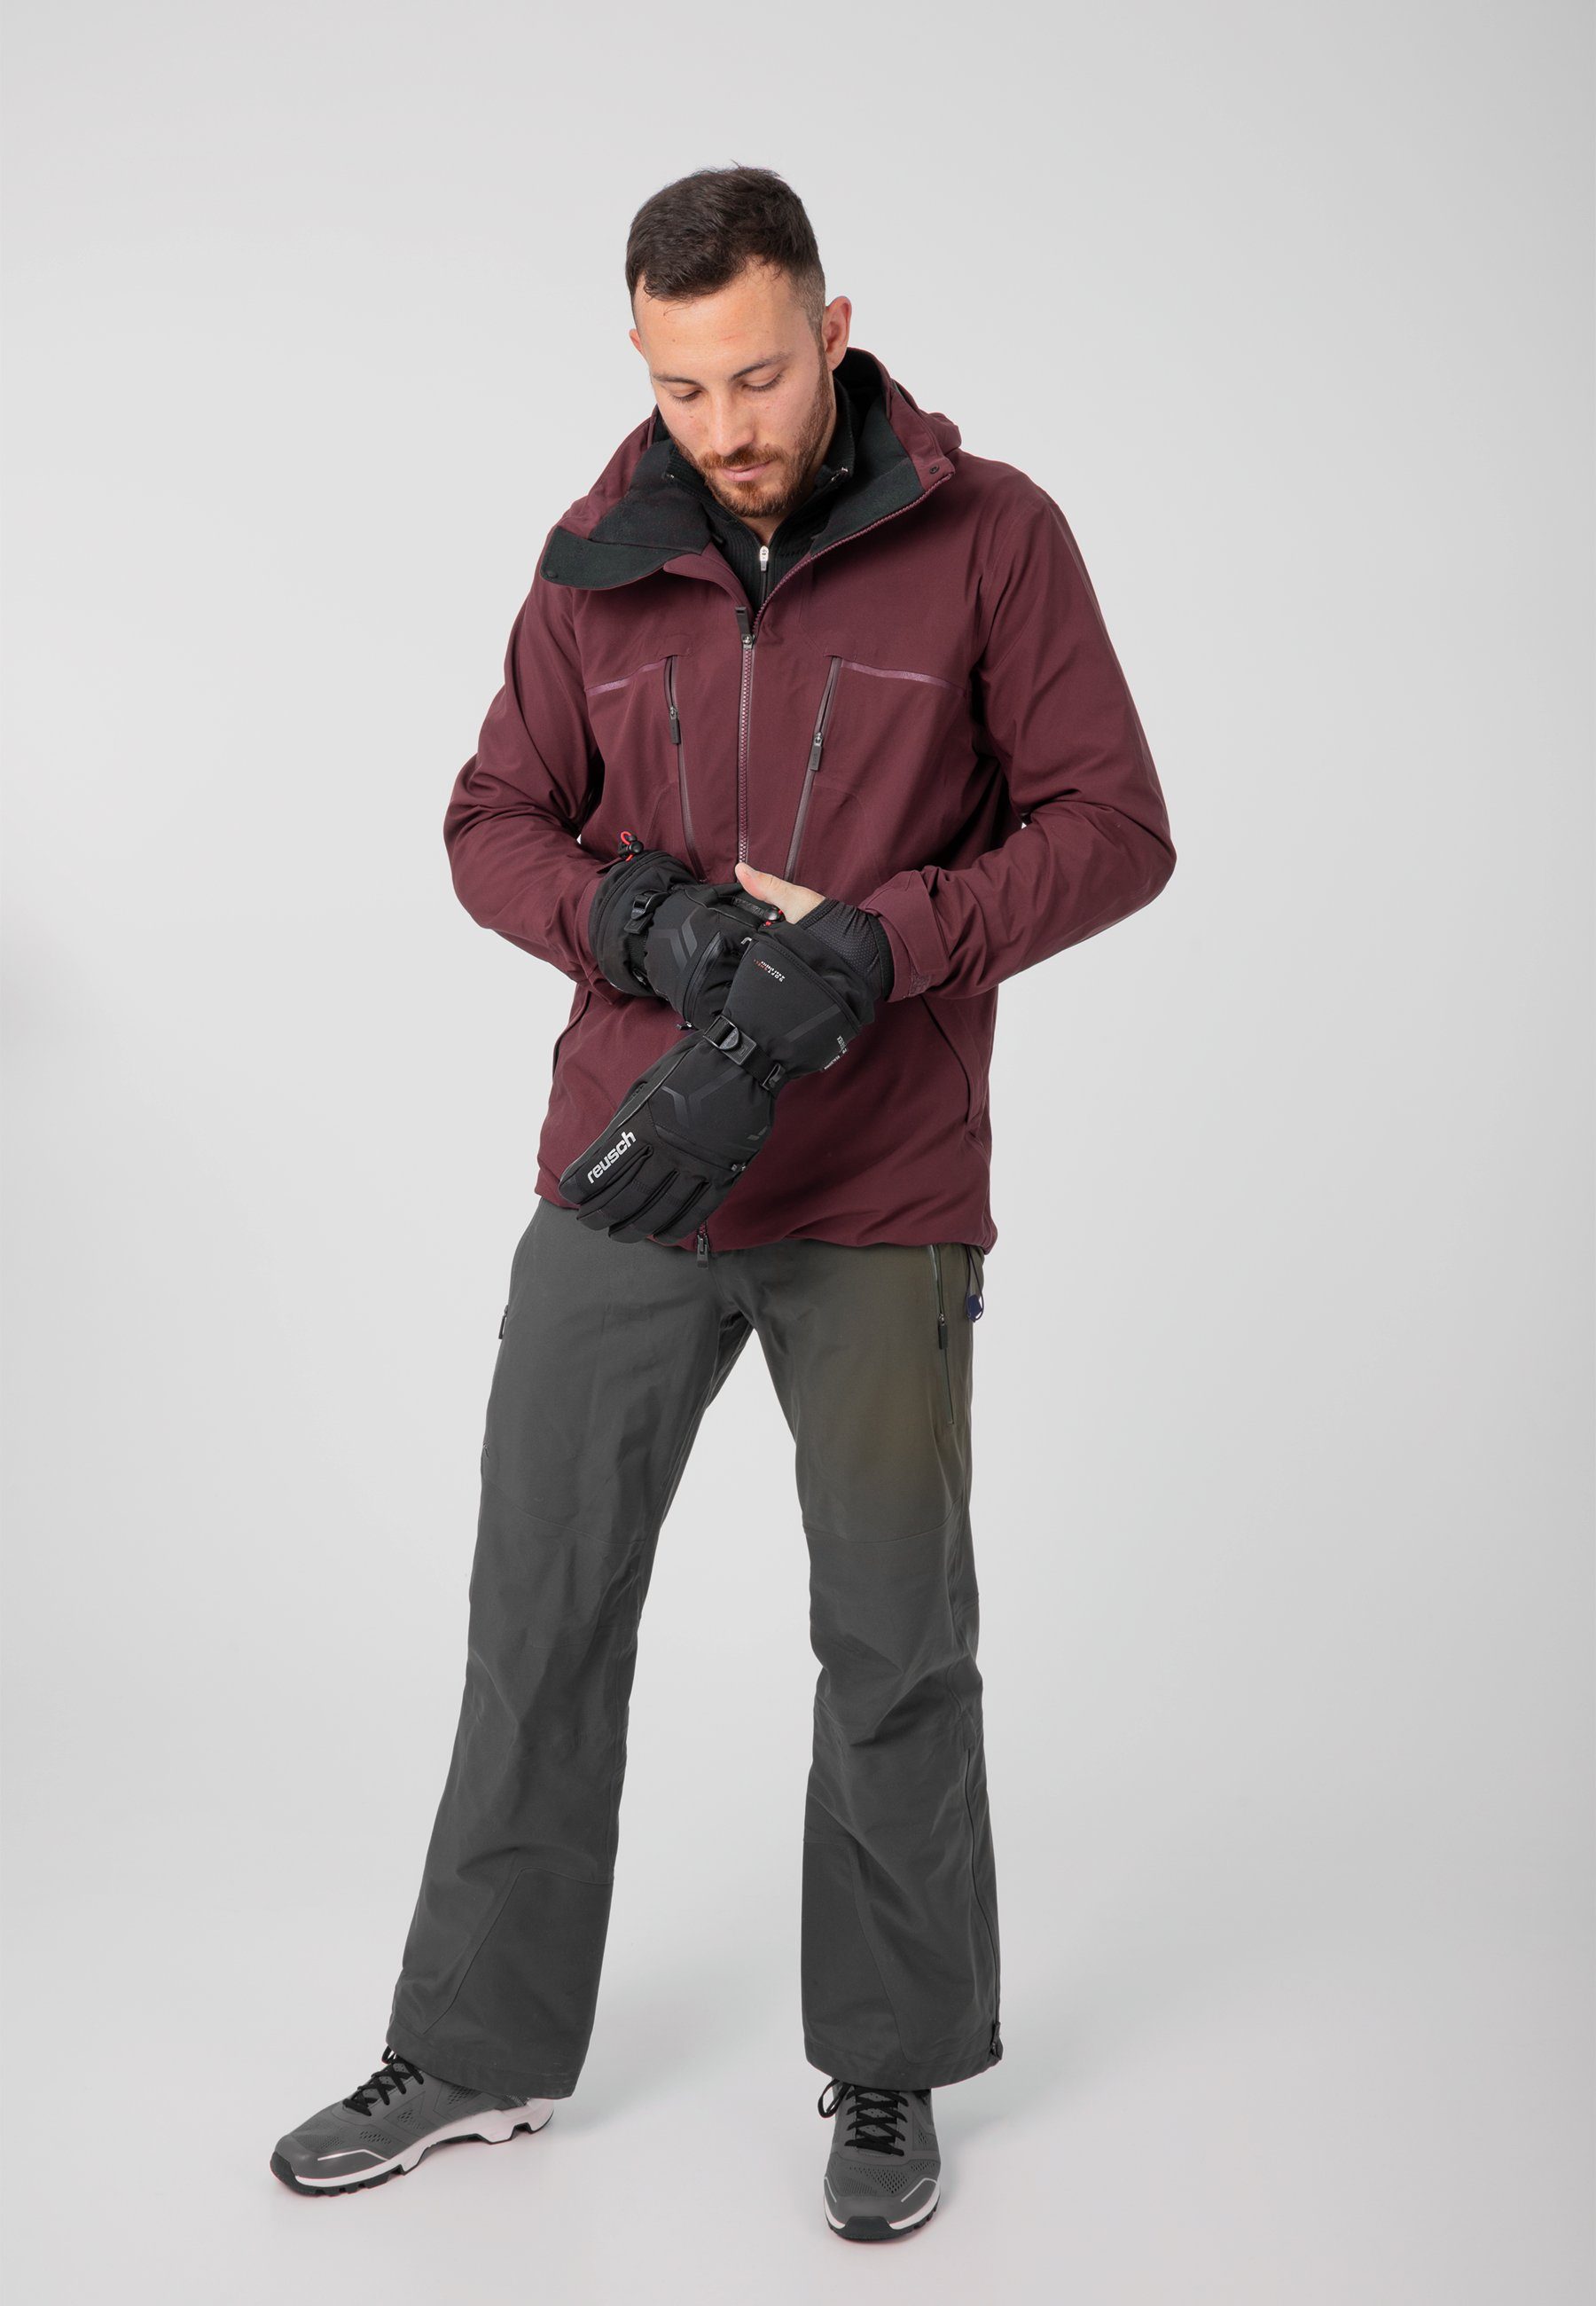 Spirit Down Reusch mit Wärmestufe Skihandschuhe silberfarben-schwarz GORE-TEX höchster